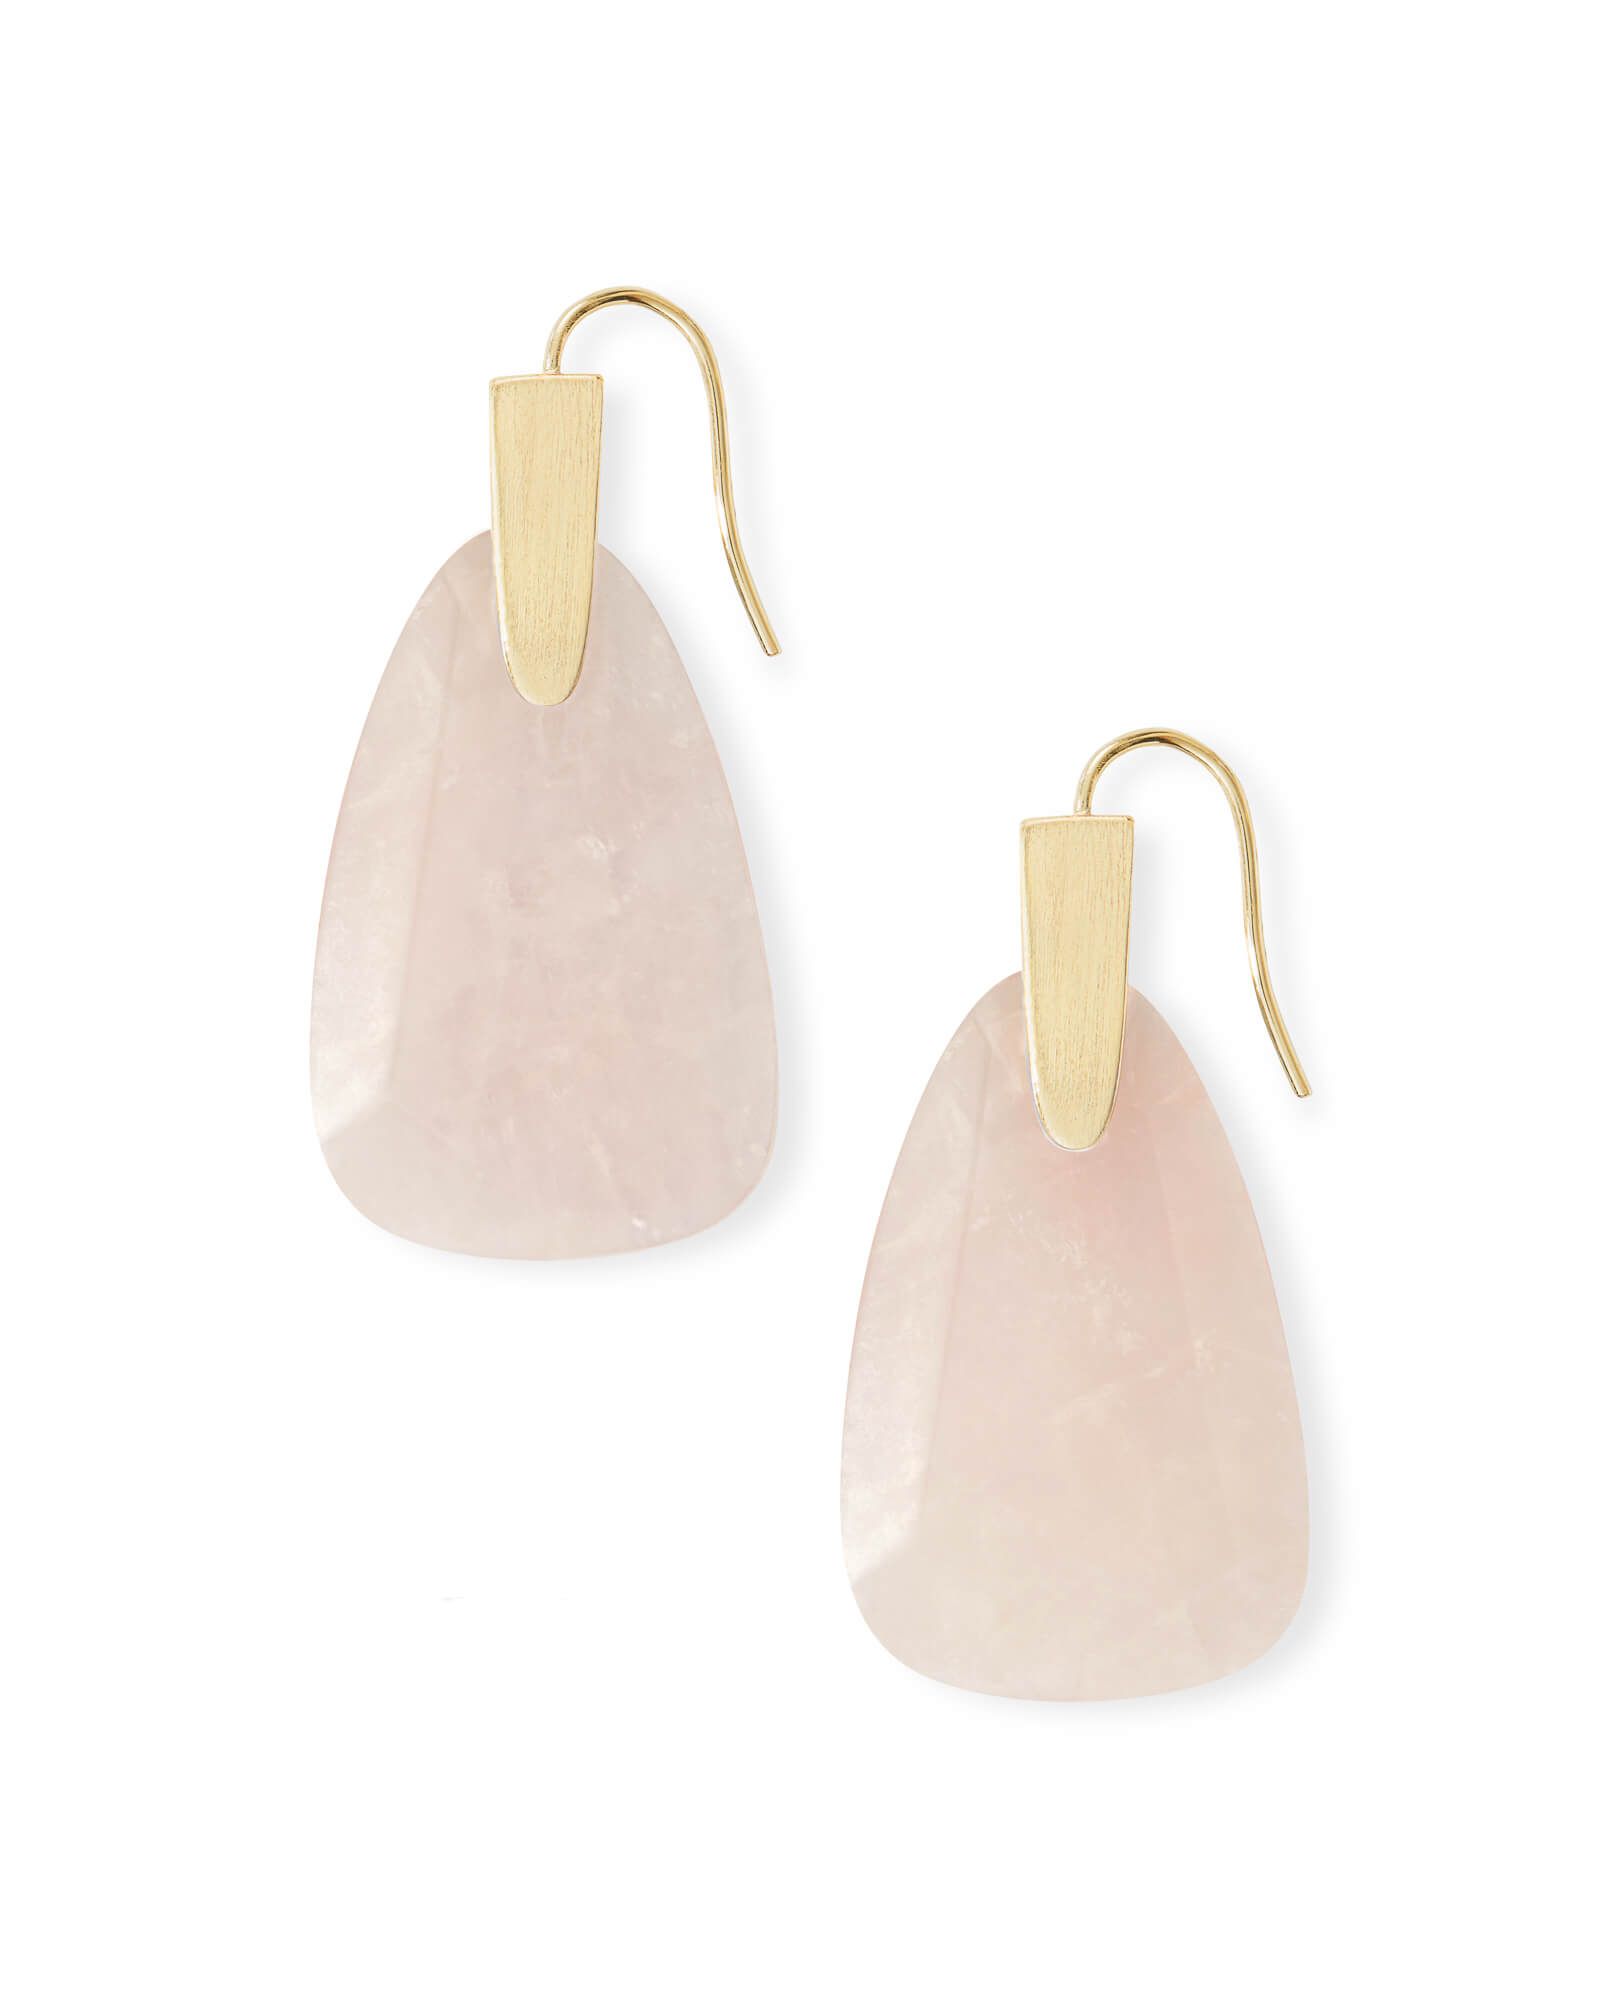 Marty Gold Drop Earrings in Rose Quartz | Kendra Scott